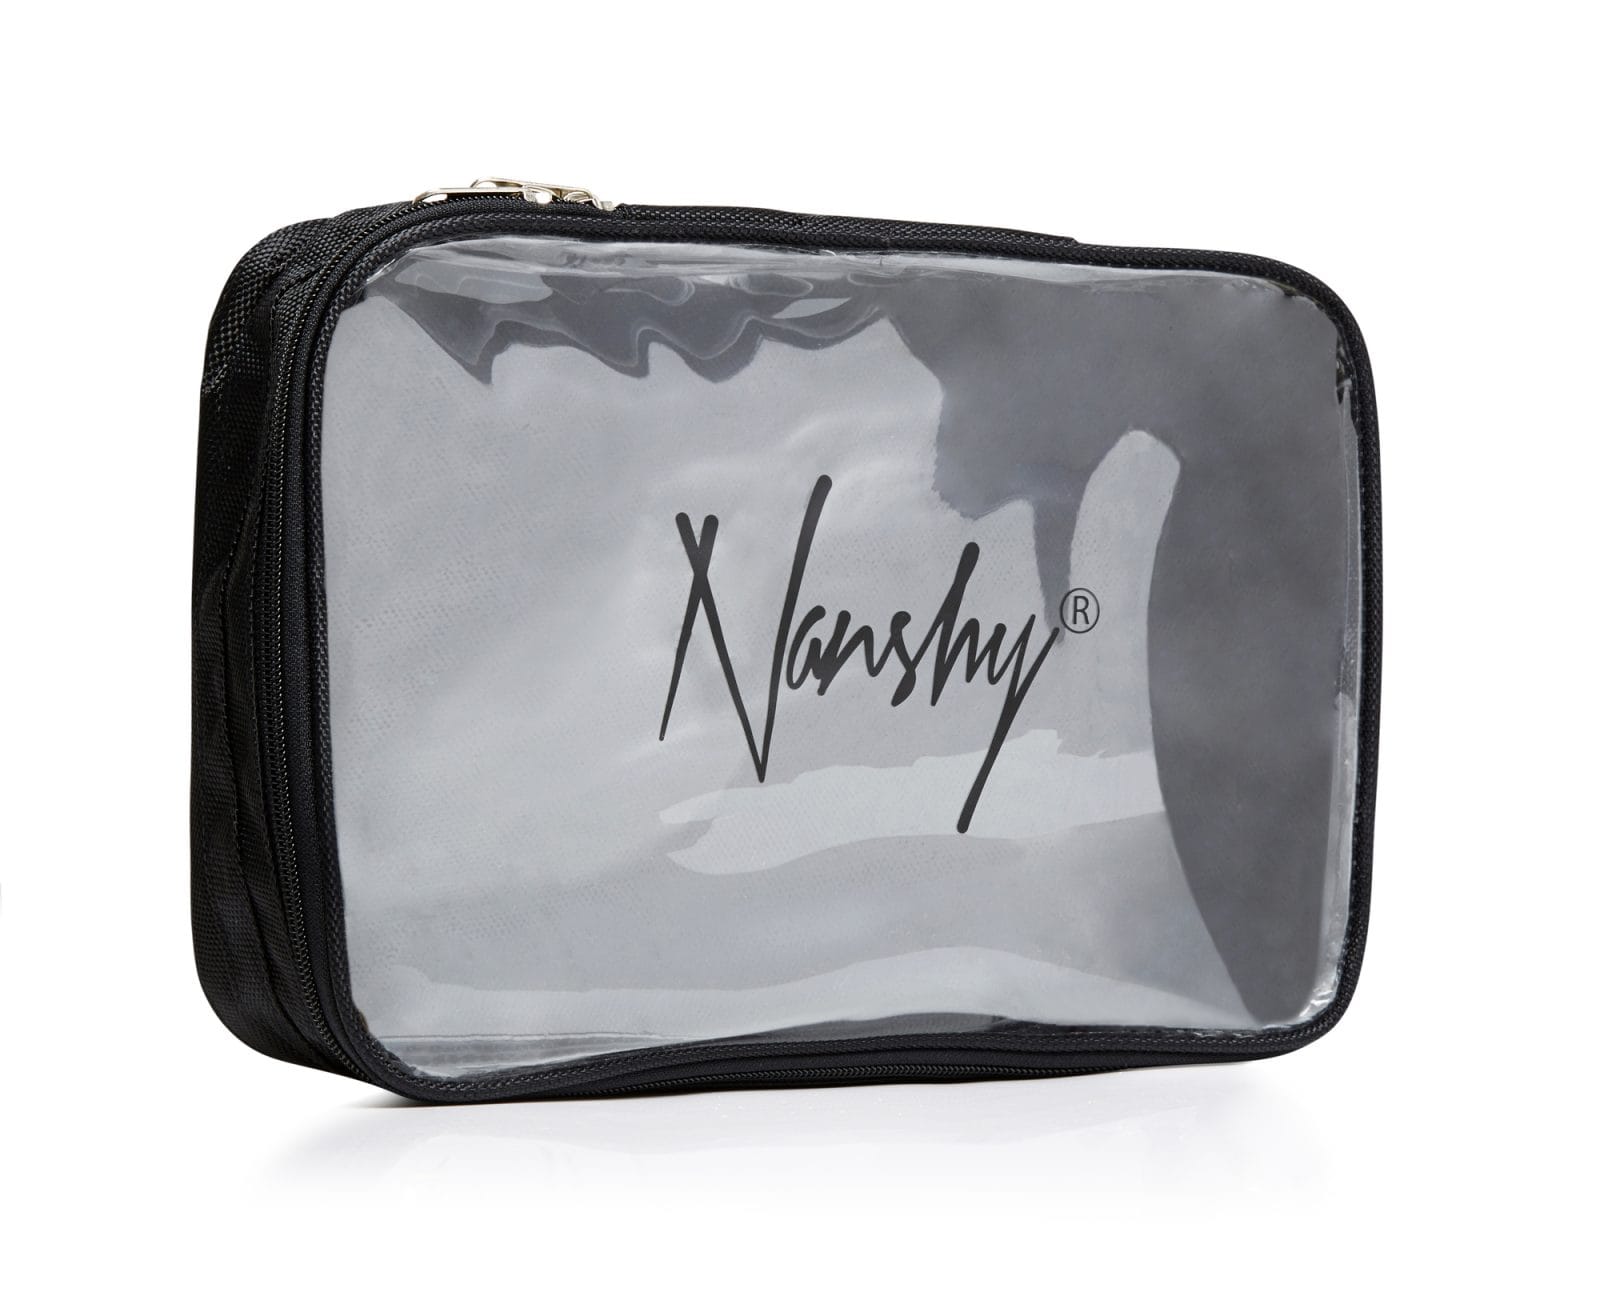 Nanshy Bag Storage Collection